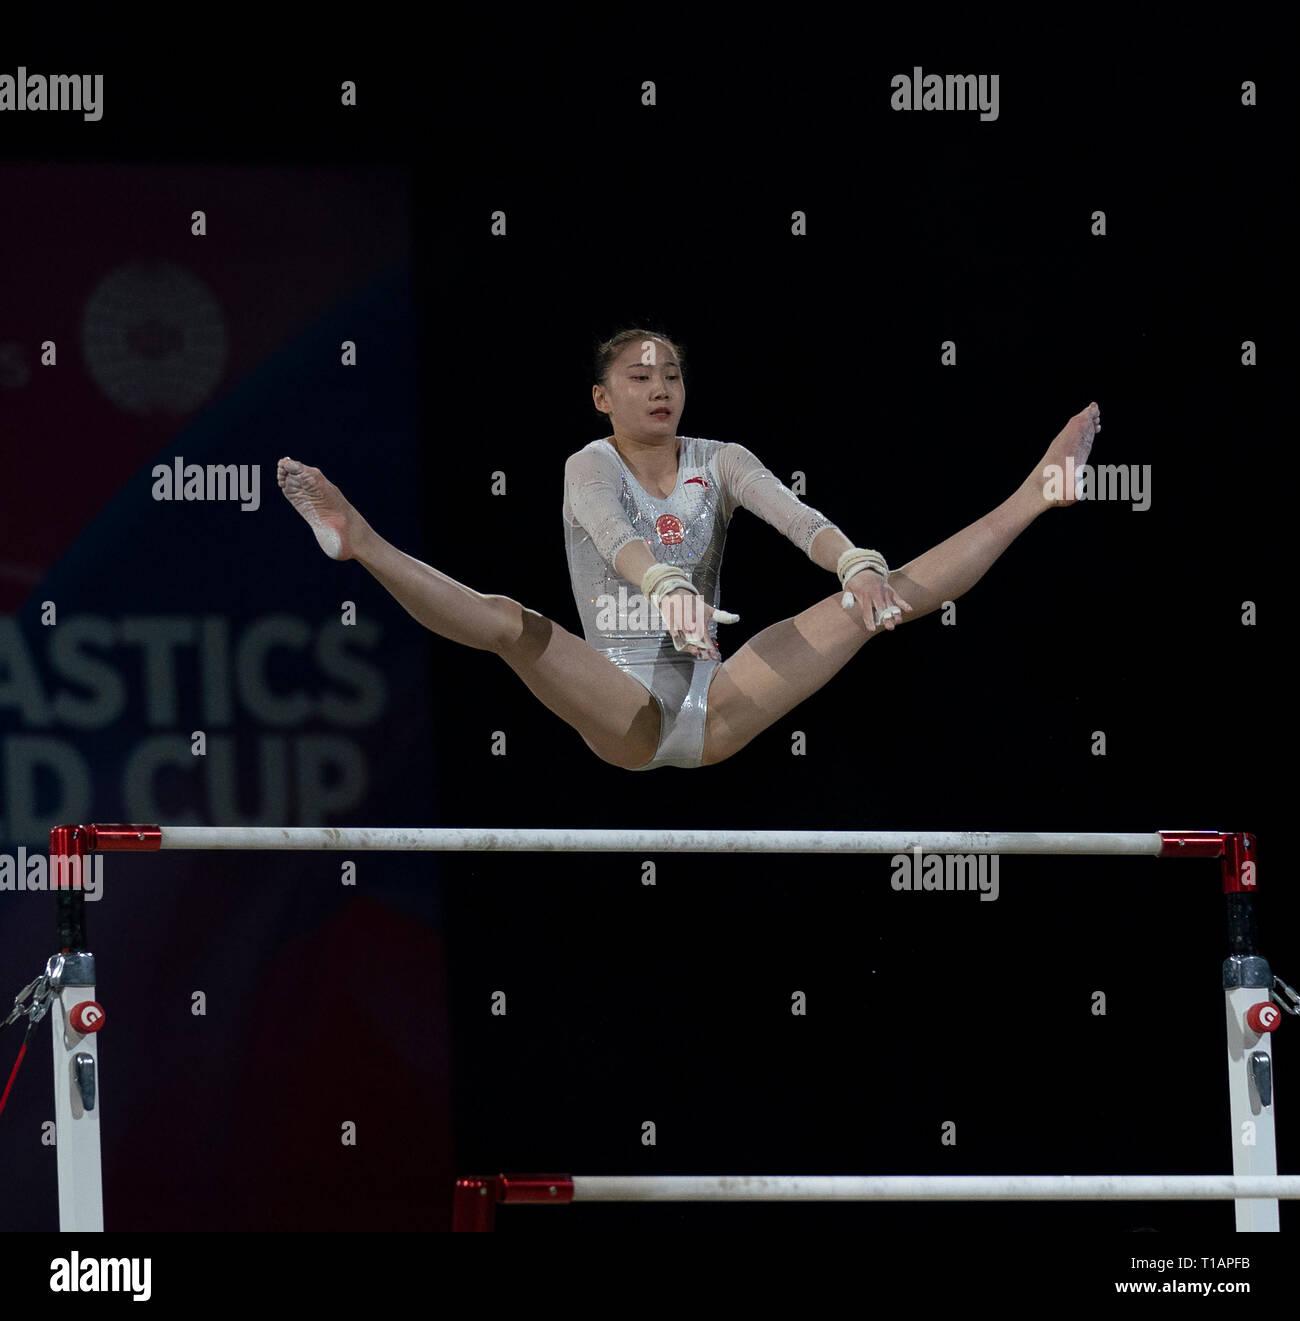 Jieyu Liu (Chine) vu en action lors de la Coupe du Monde de Gymnastique 2019 à Birmingham dans l'Arène de Genting. Banque D'Images